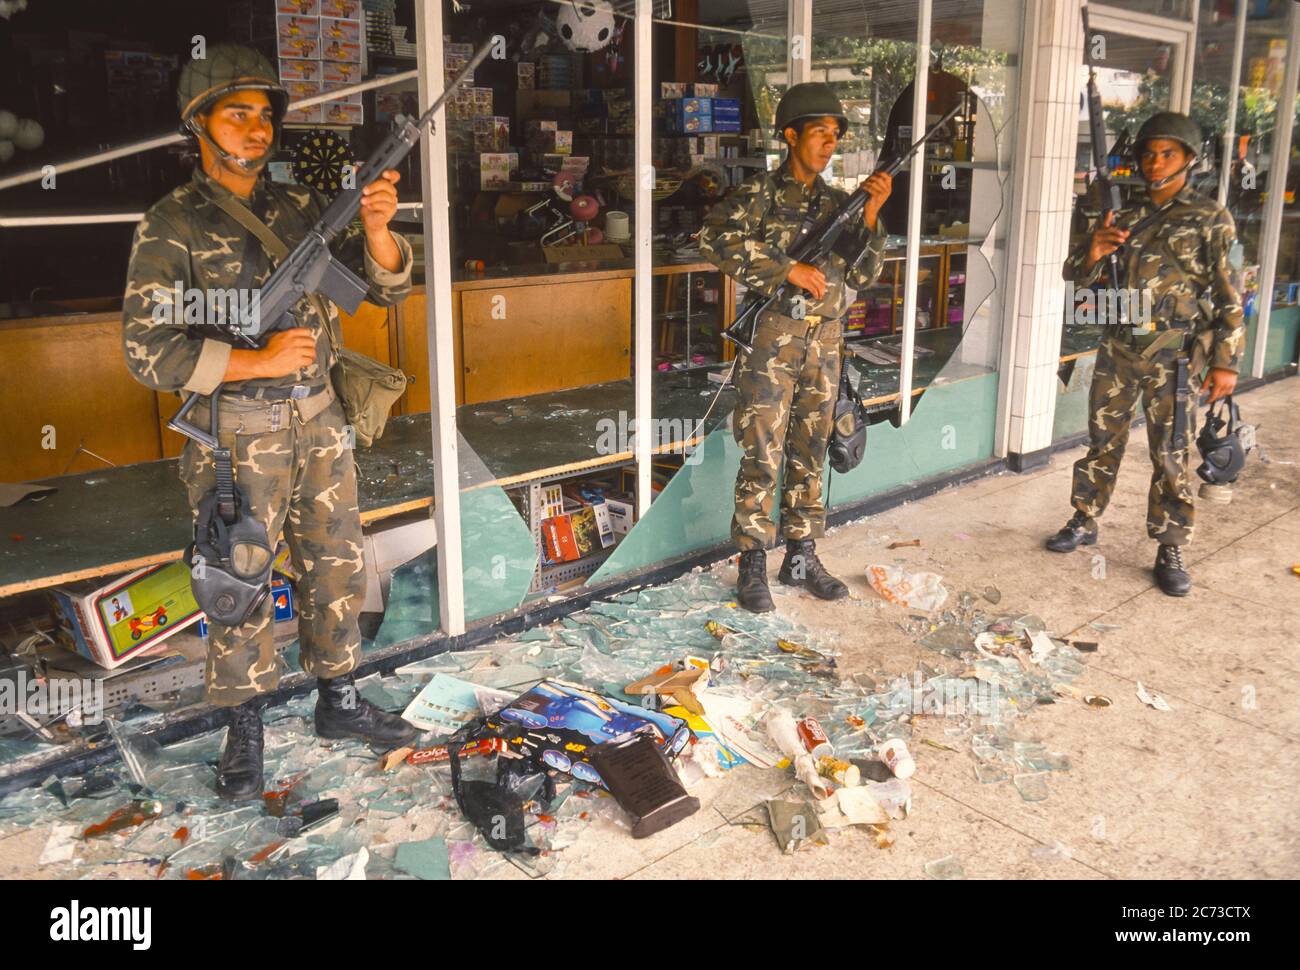 CARACAS, VENEZUELA, MARCH1989 - les soldats de l'armée vénézuélienne gardent le magasin pillé pendant l'état d'urgence à Caracas, connu sous le nom de Caracazo. Banque D'Images